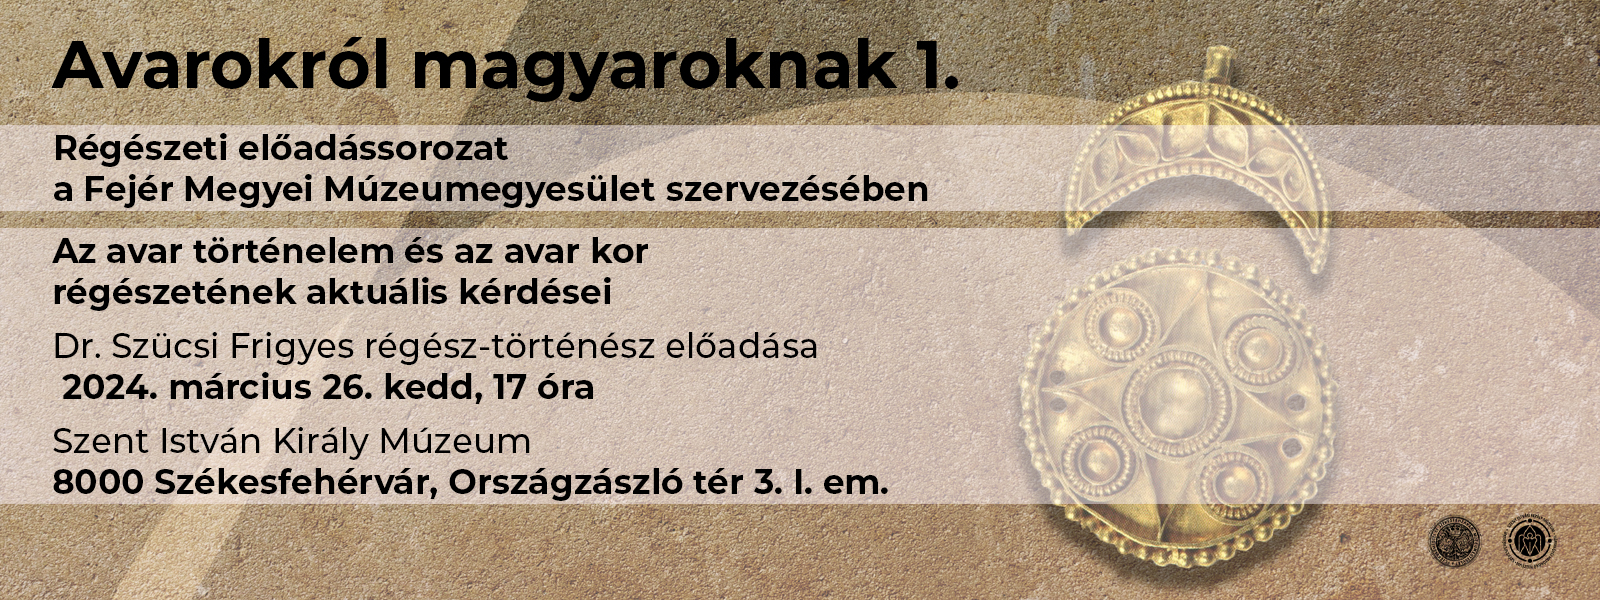 Avarokról magyaroknak – előadássorozat 1.: Az avar történelem és az avar kor régészetének aktuális kérdései 